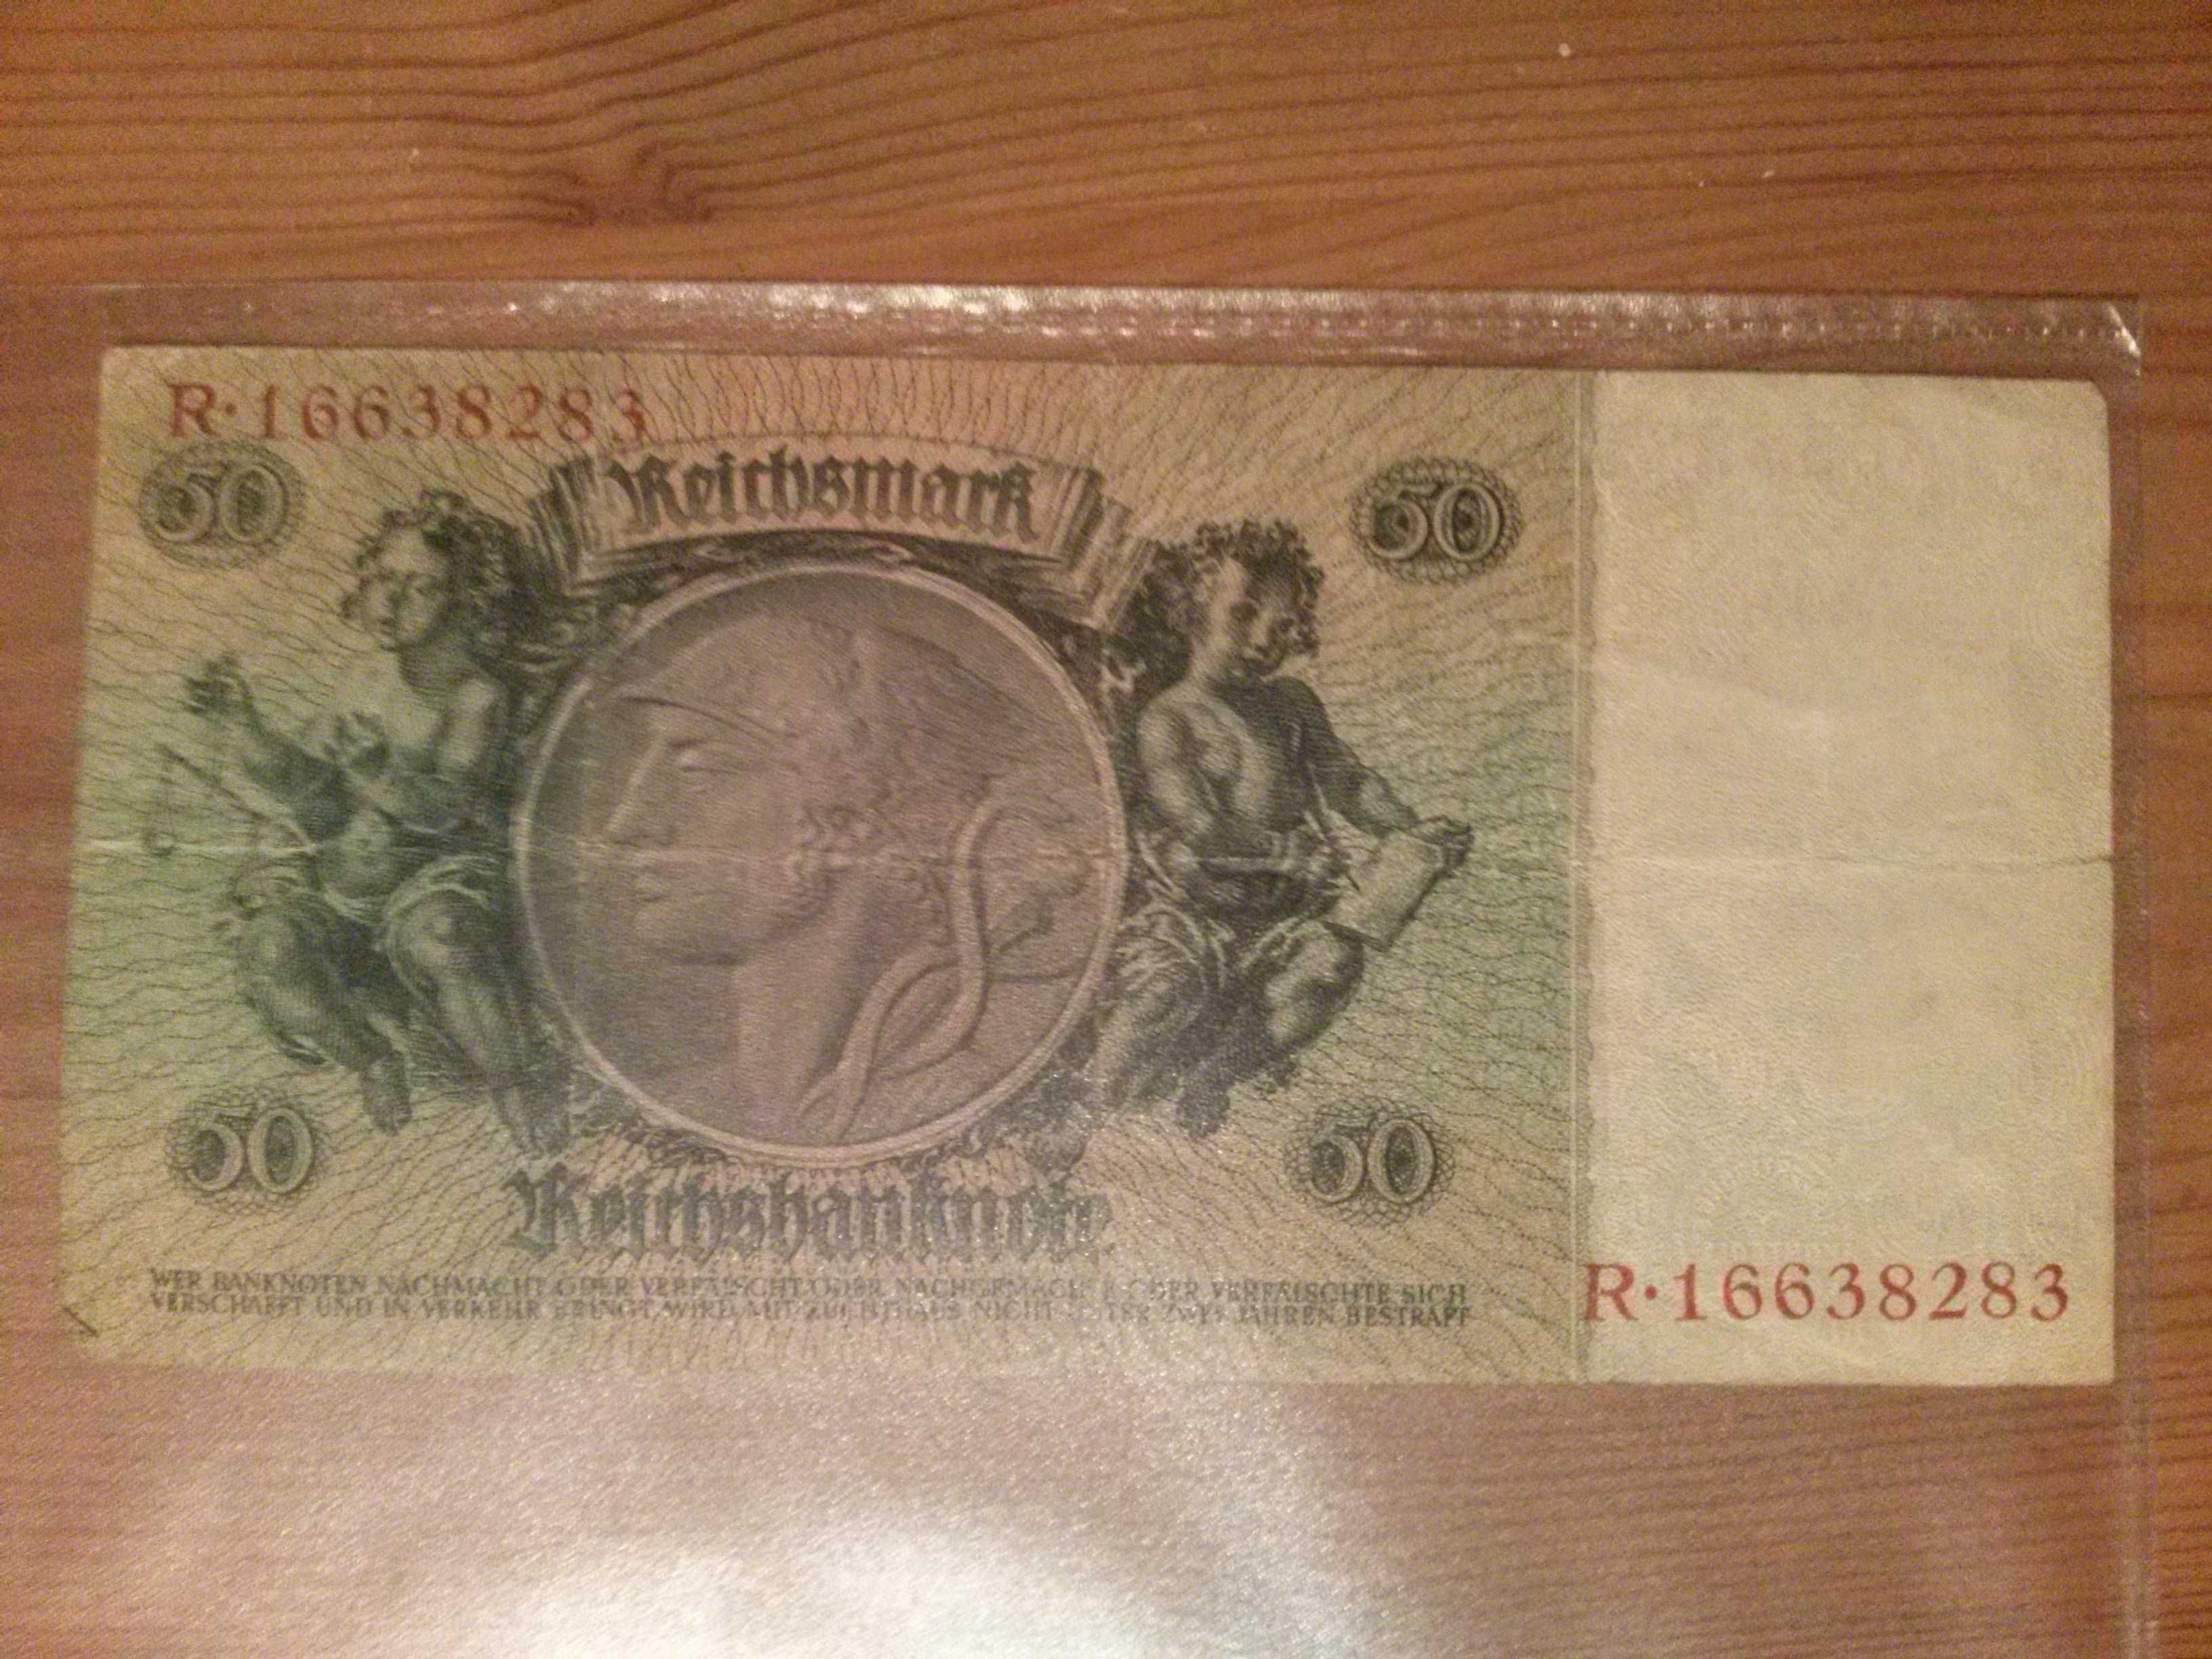 Banknot Niemiecki Przedwojenny 1933 rok